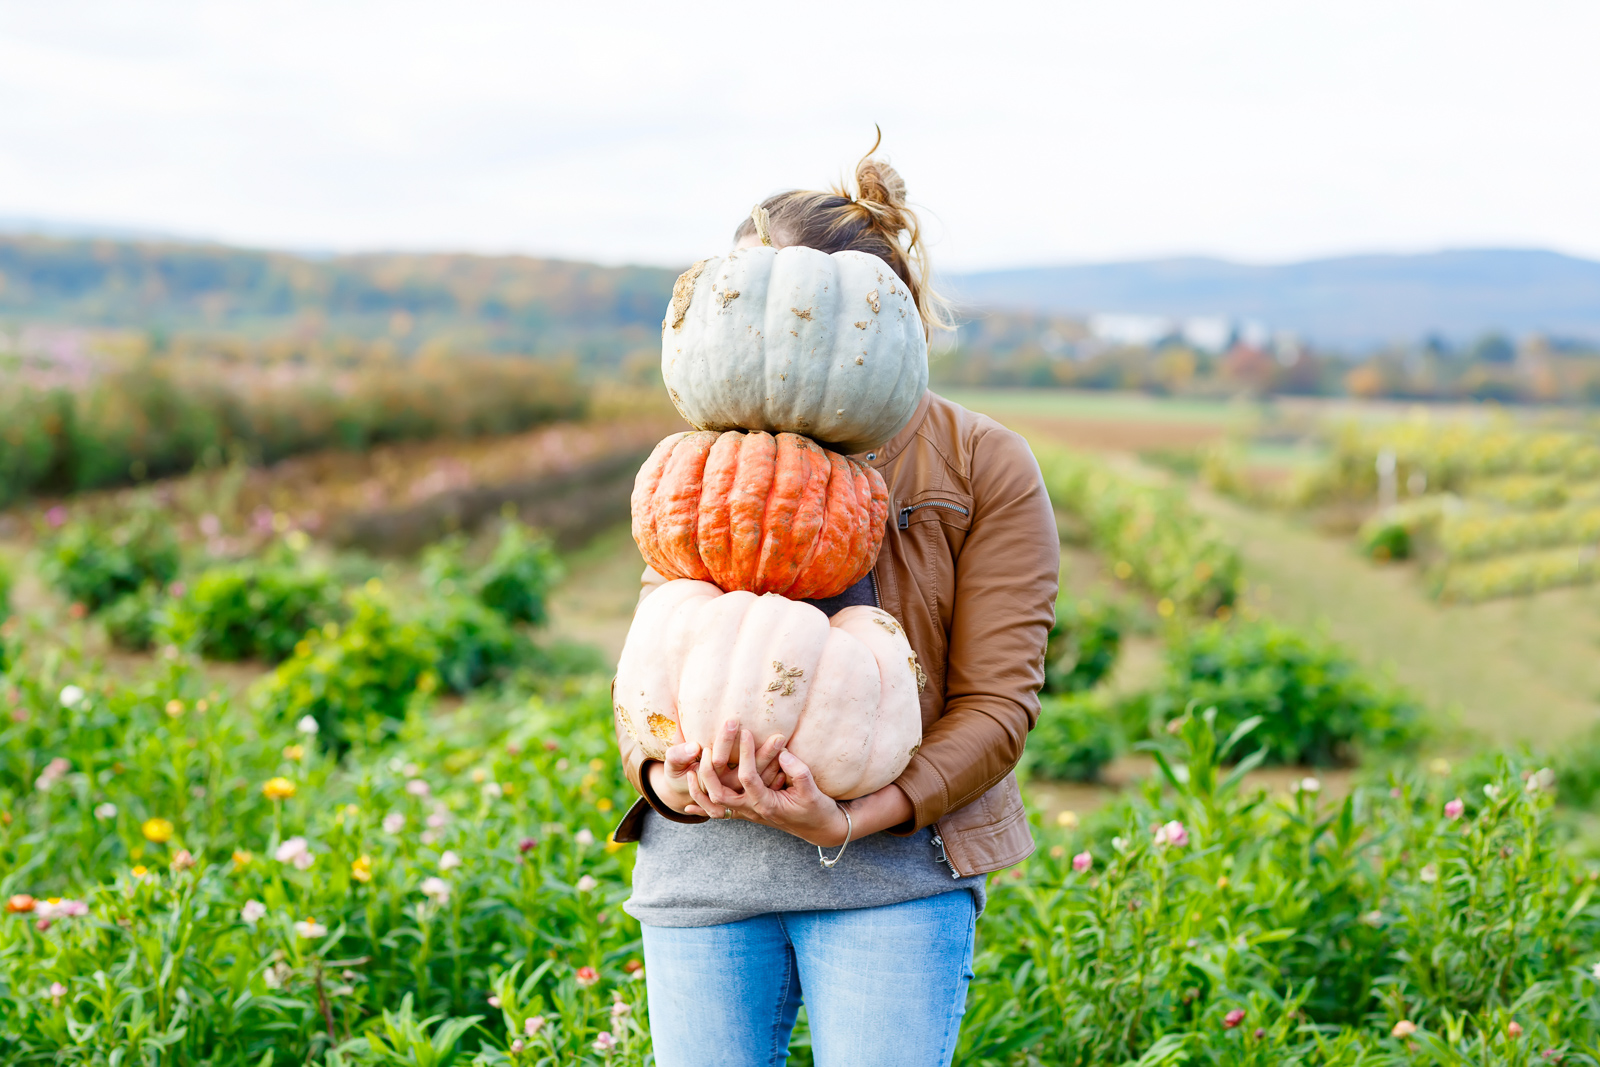 Pumpkin Farm Near Me- Pumpkin Patches, Pumpkin Picking and Pumpkin Ideas via Misty Nelson @frostedevents